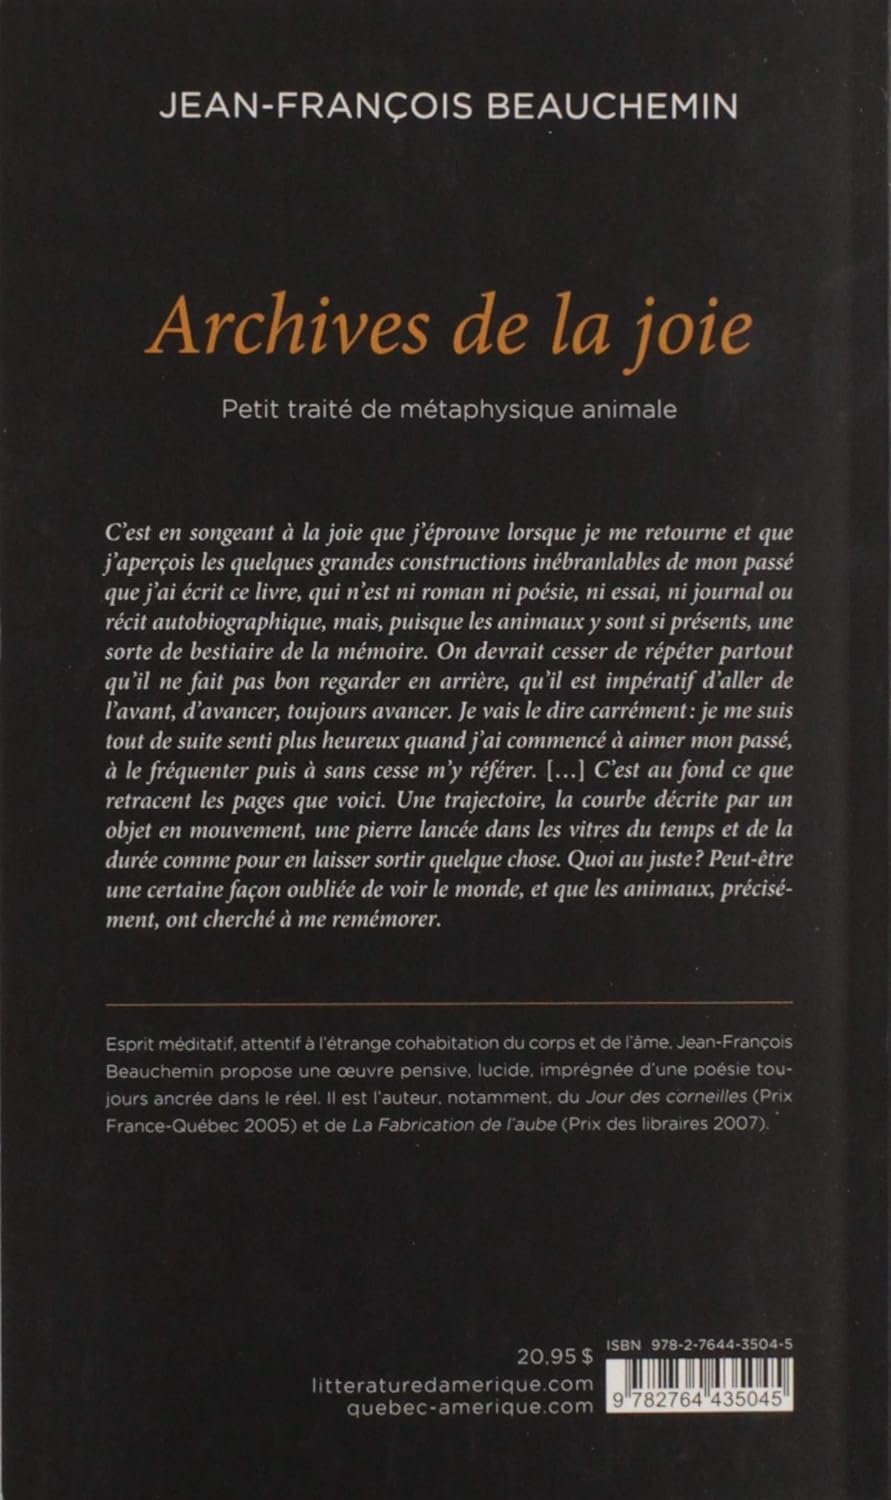 Archives de la joie : Petit traité de métaphysique animale (Jean-François Beauchemin)